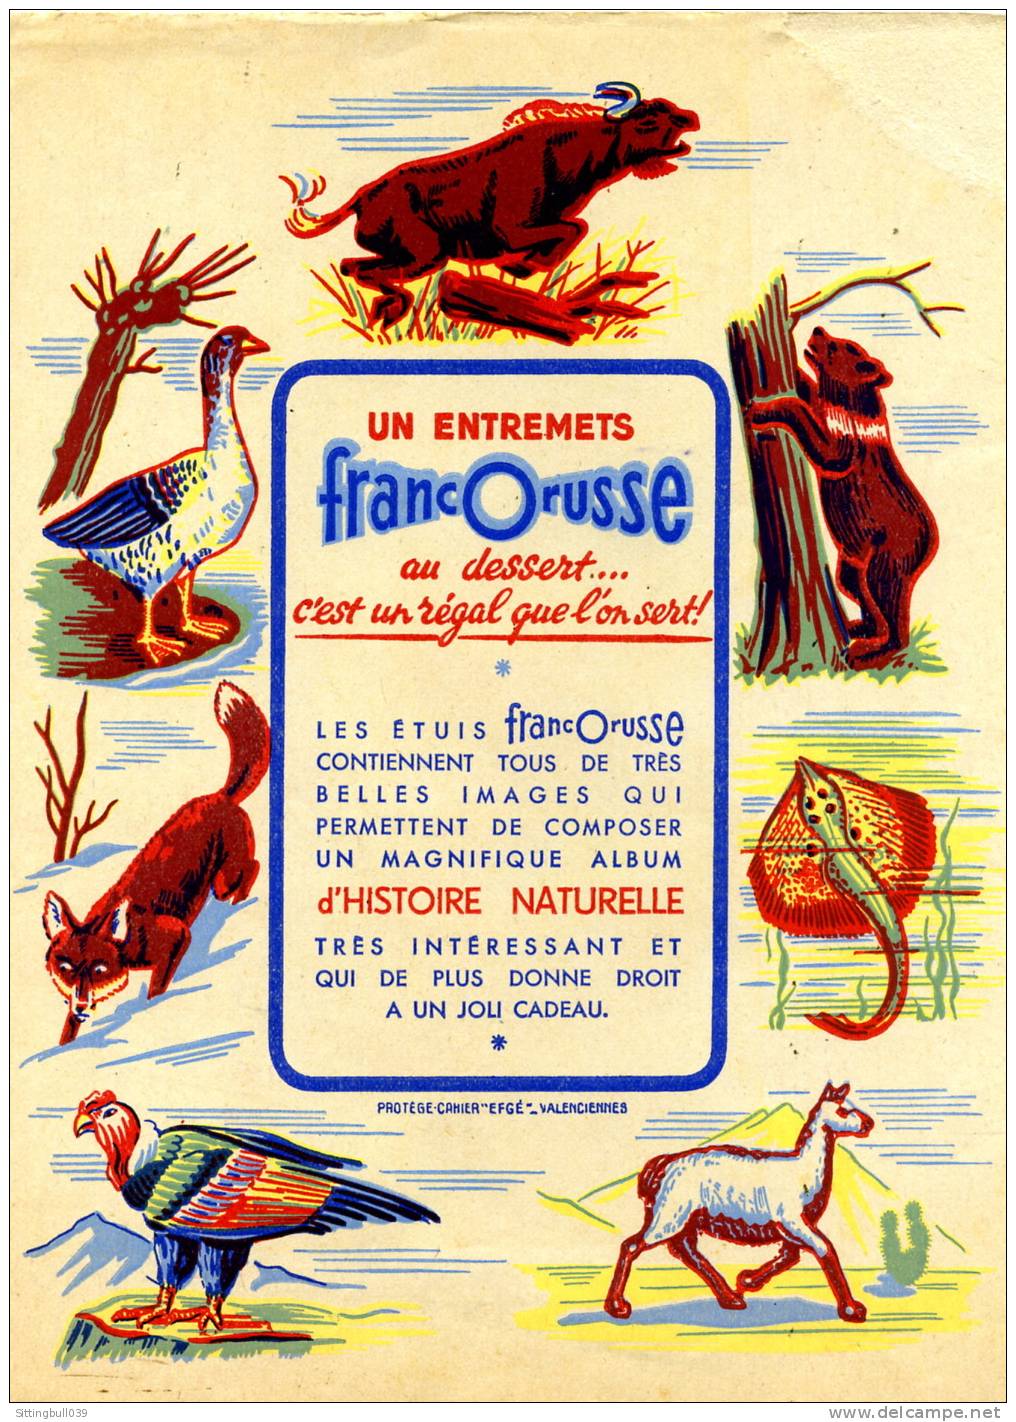 PROTÈGE-CAHIER PUB OFFERT PAR LES ENTREMETS FRANCORUSSE. SD 1950 / 60 - Book Covers